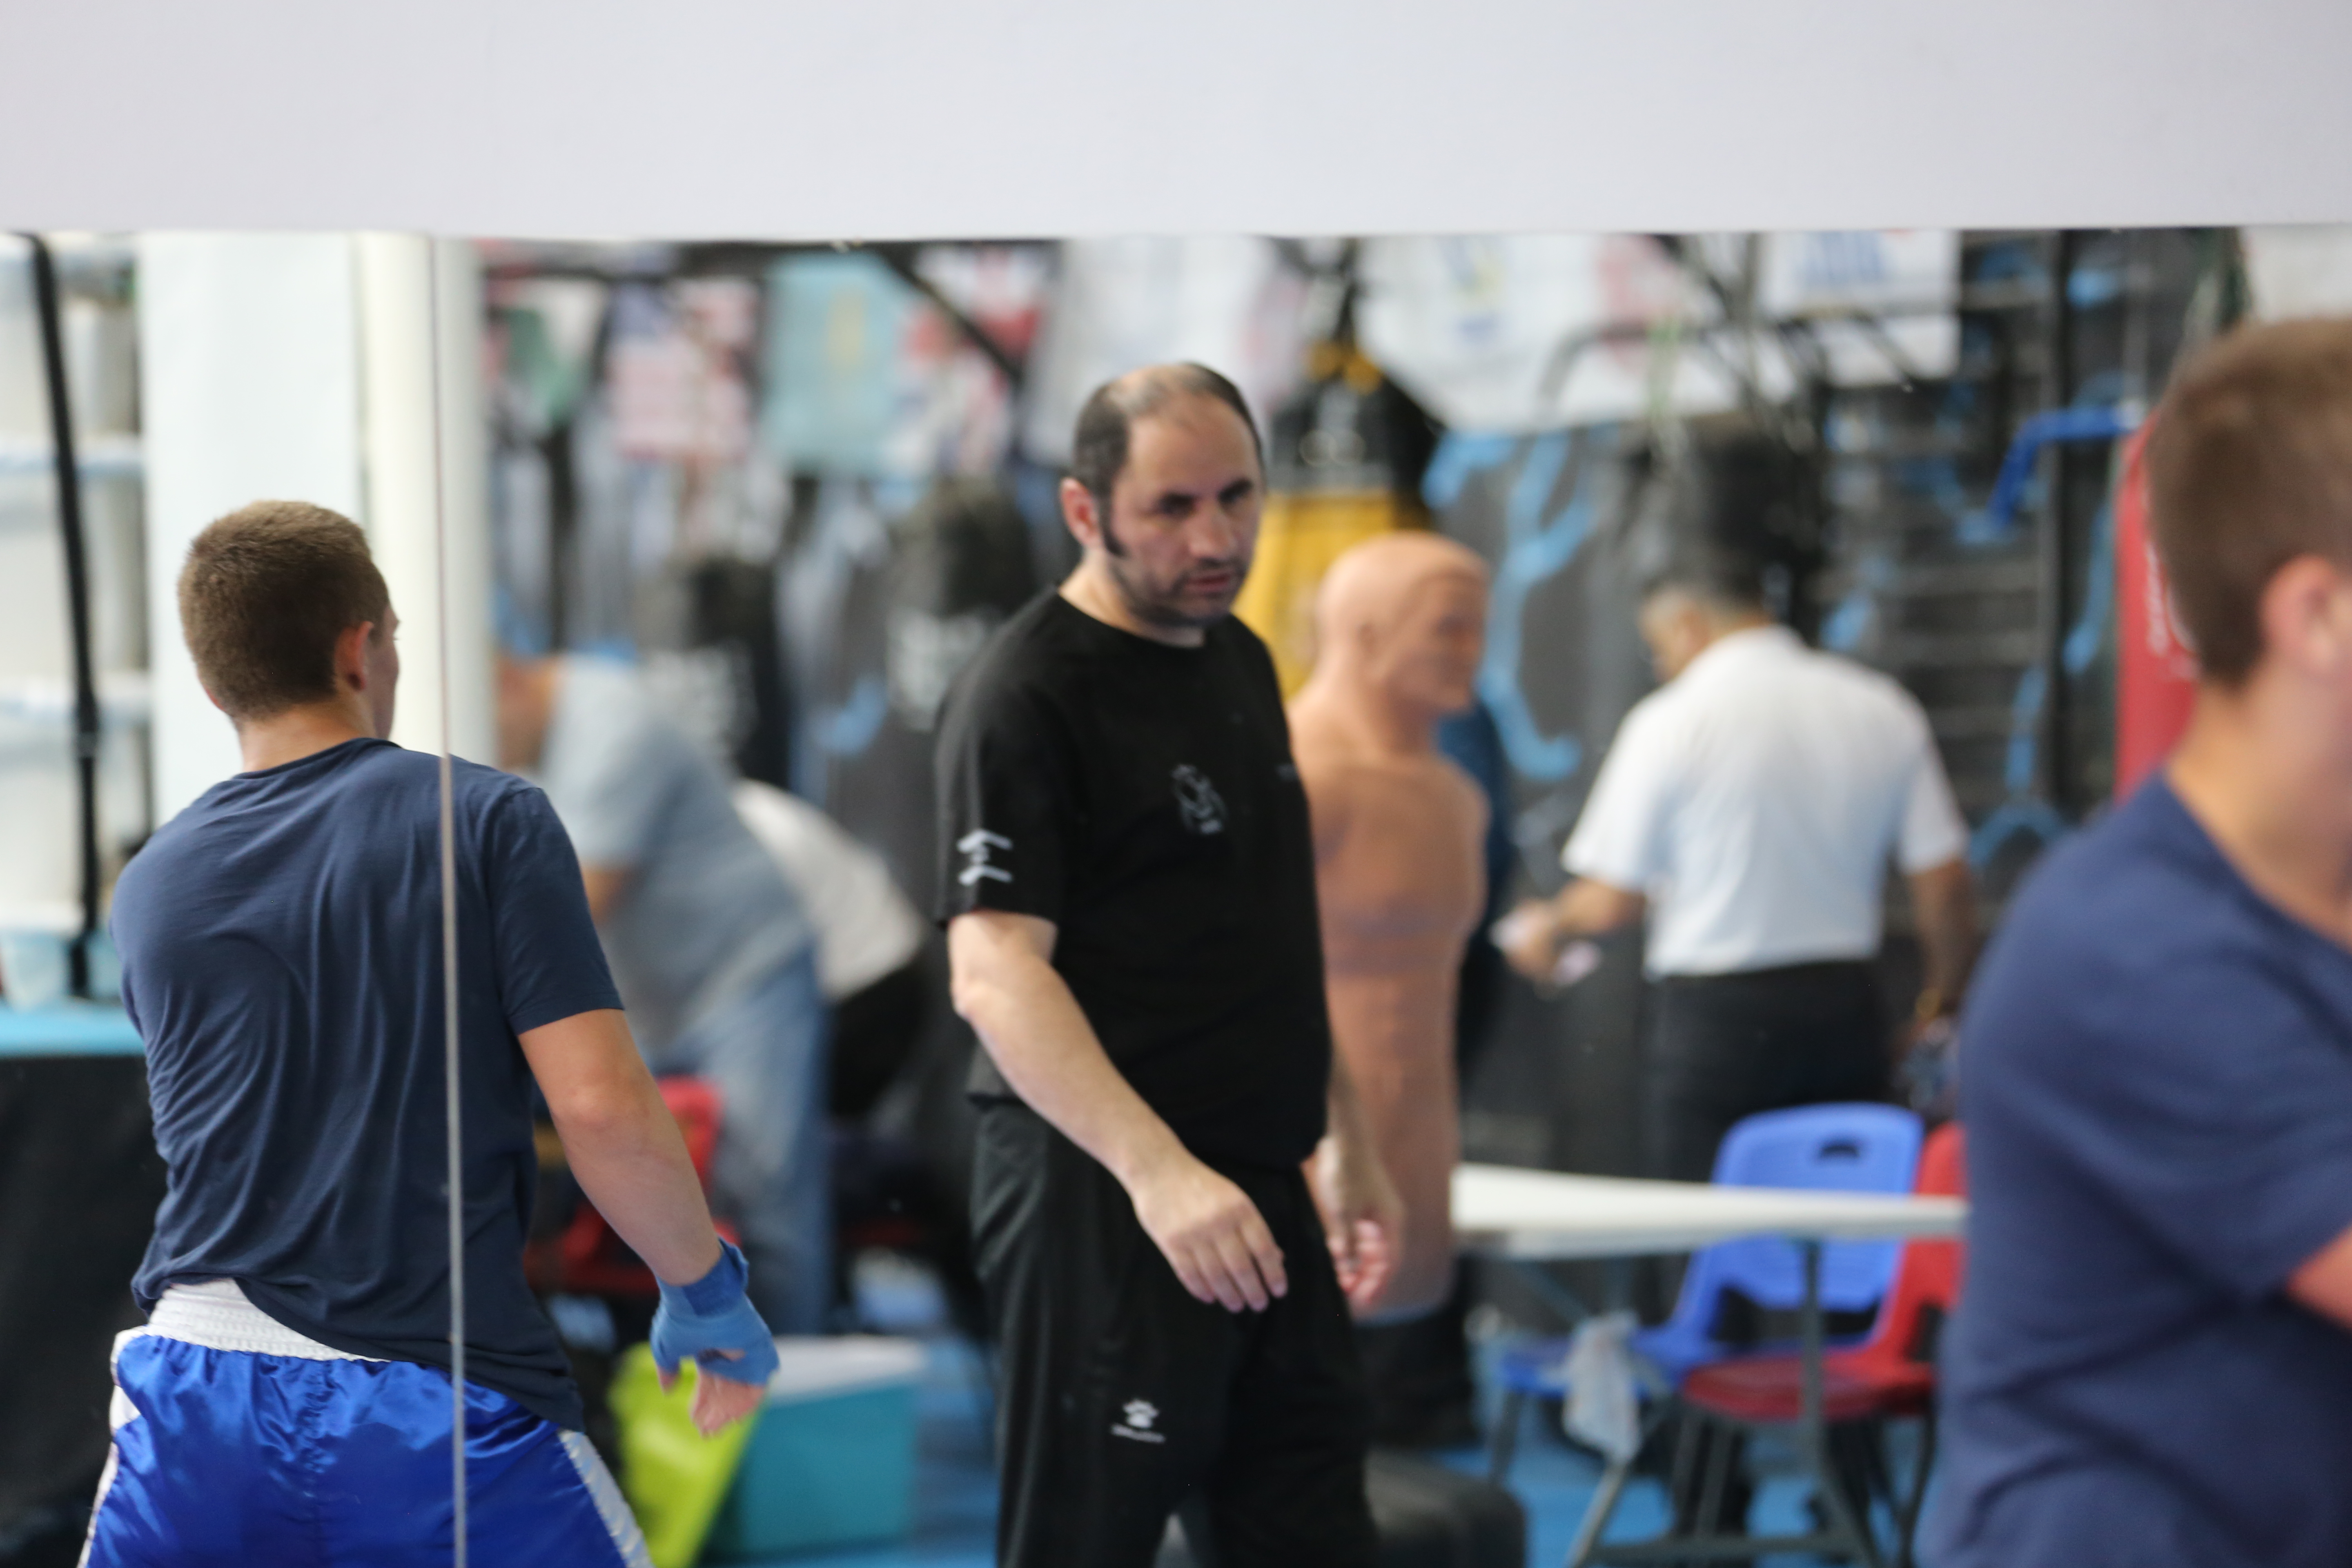 انطلاق تصفيات بطولة أوروبا للملاكمة في نادي الاسود القسماوية في كفرقاسم والتي تستمر حتى يوم السبت بمشاركة 50 ملاكم ..